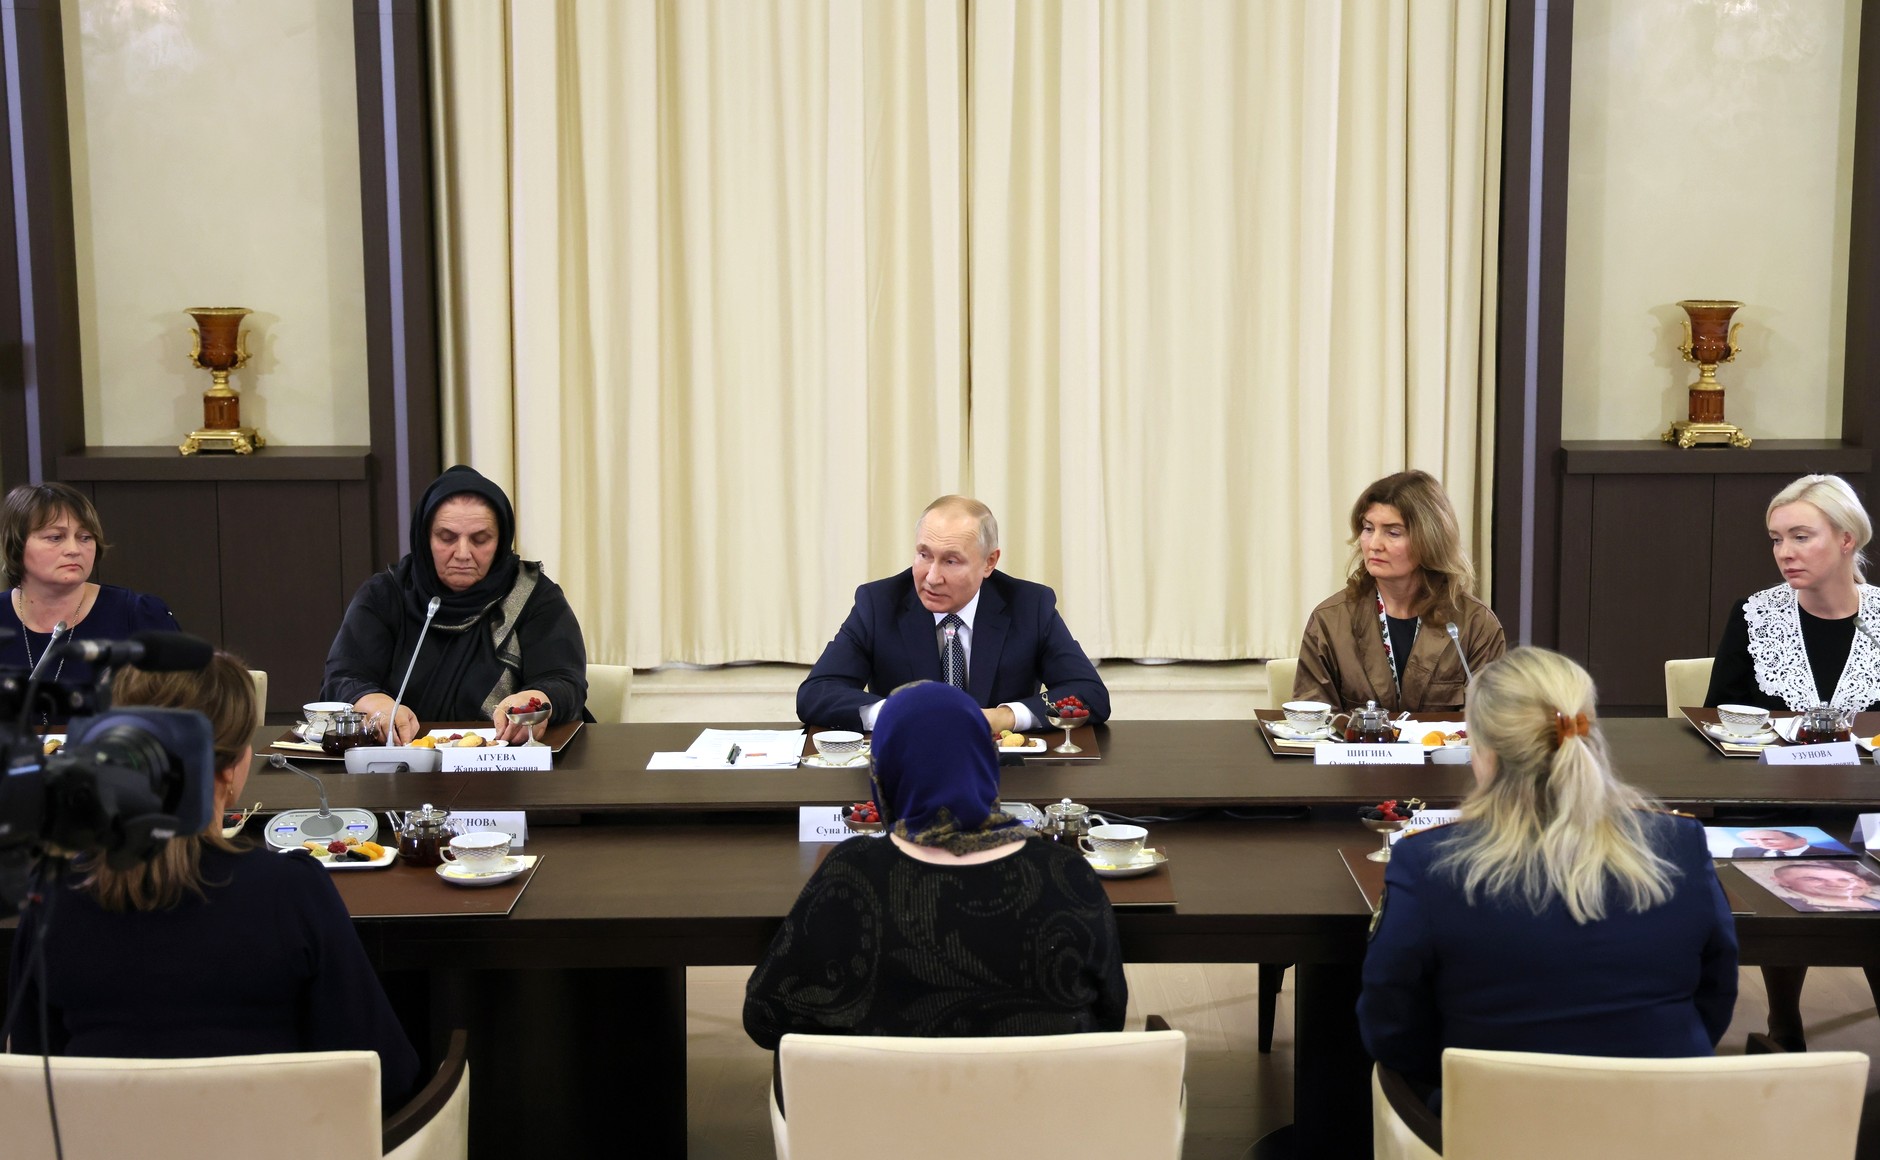 Новости политики пресса. Встреча президента с матерями. Встреча Путина с матерями военнослужащих. Европейские политики.